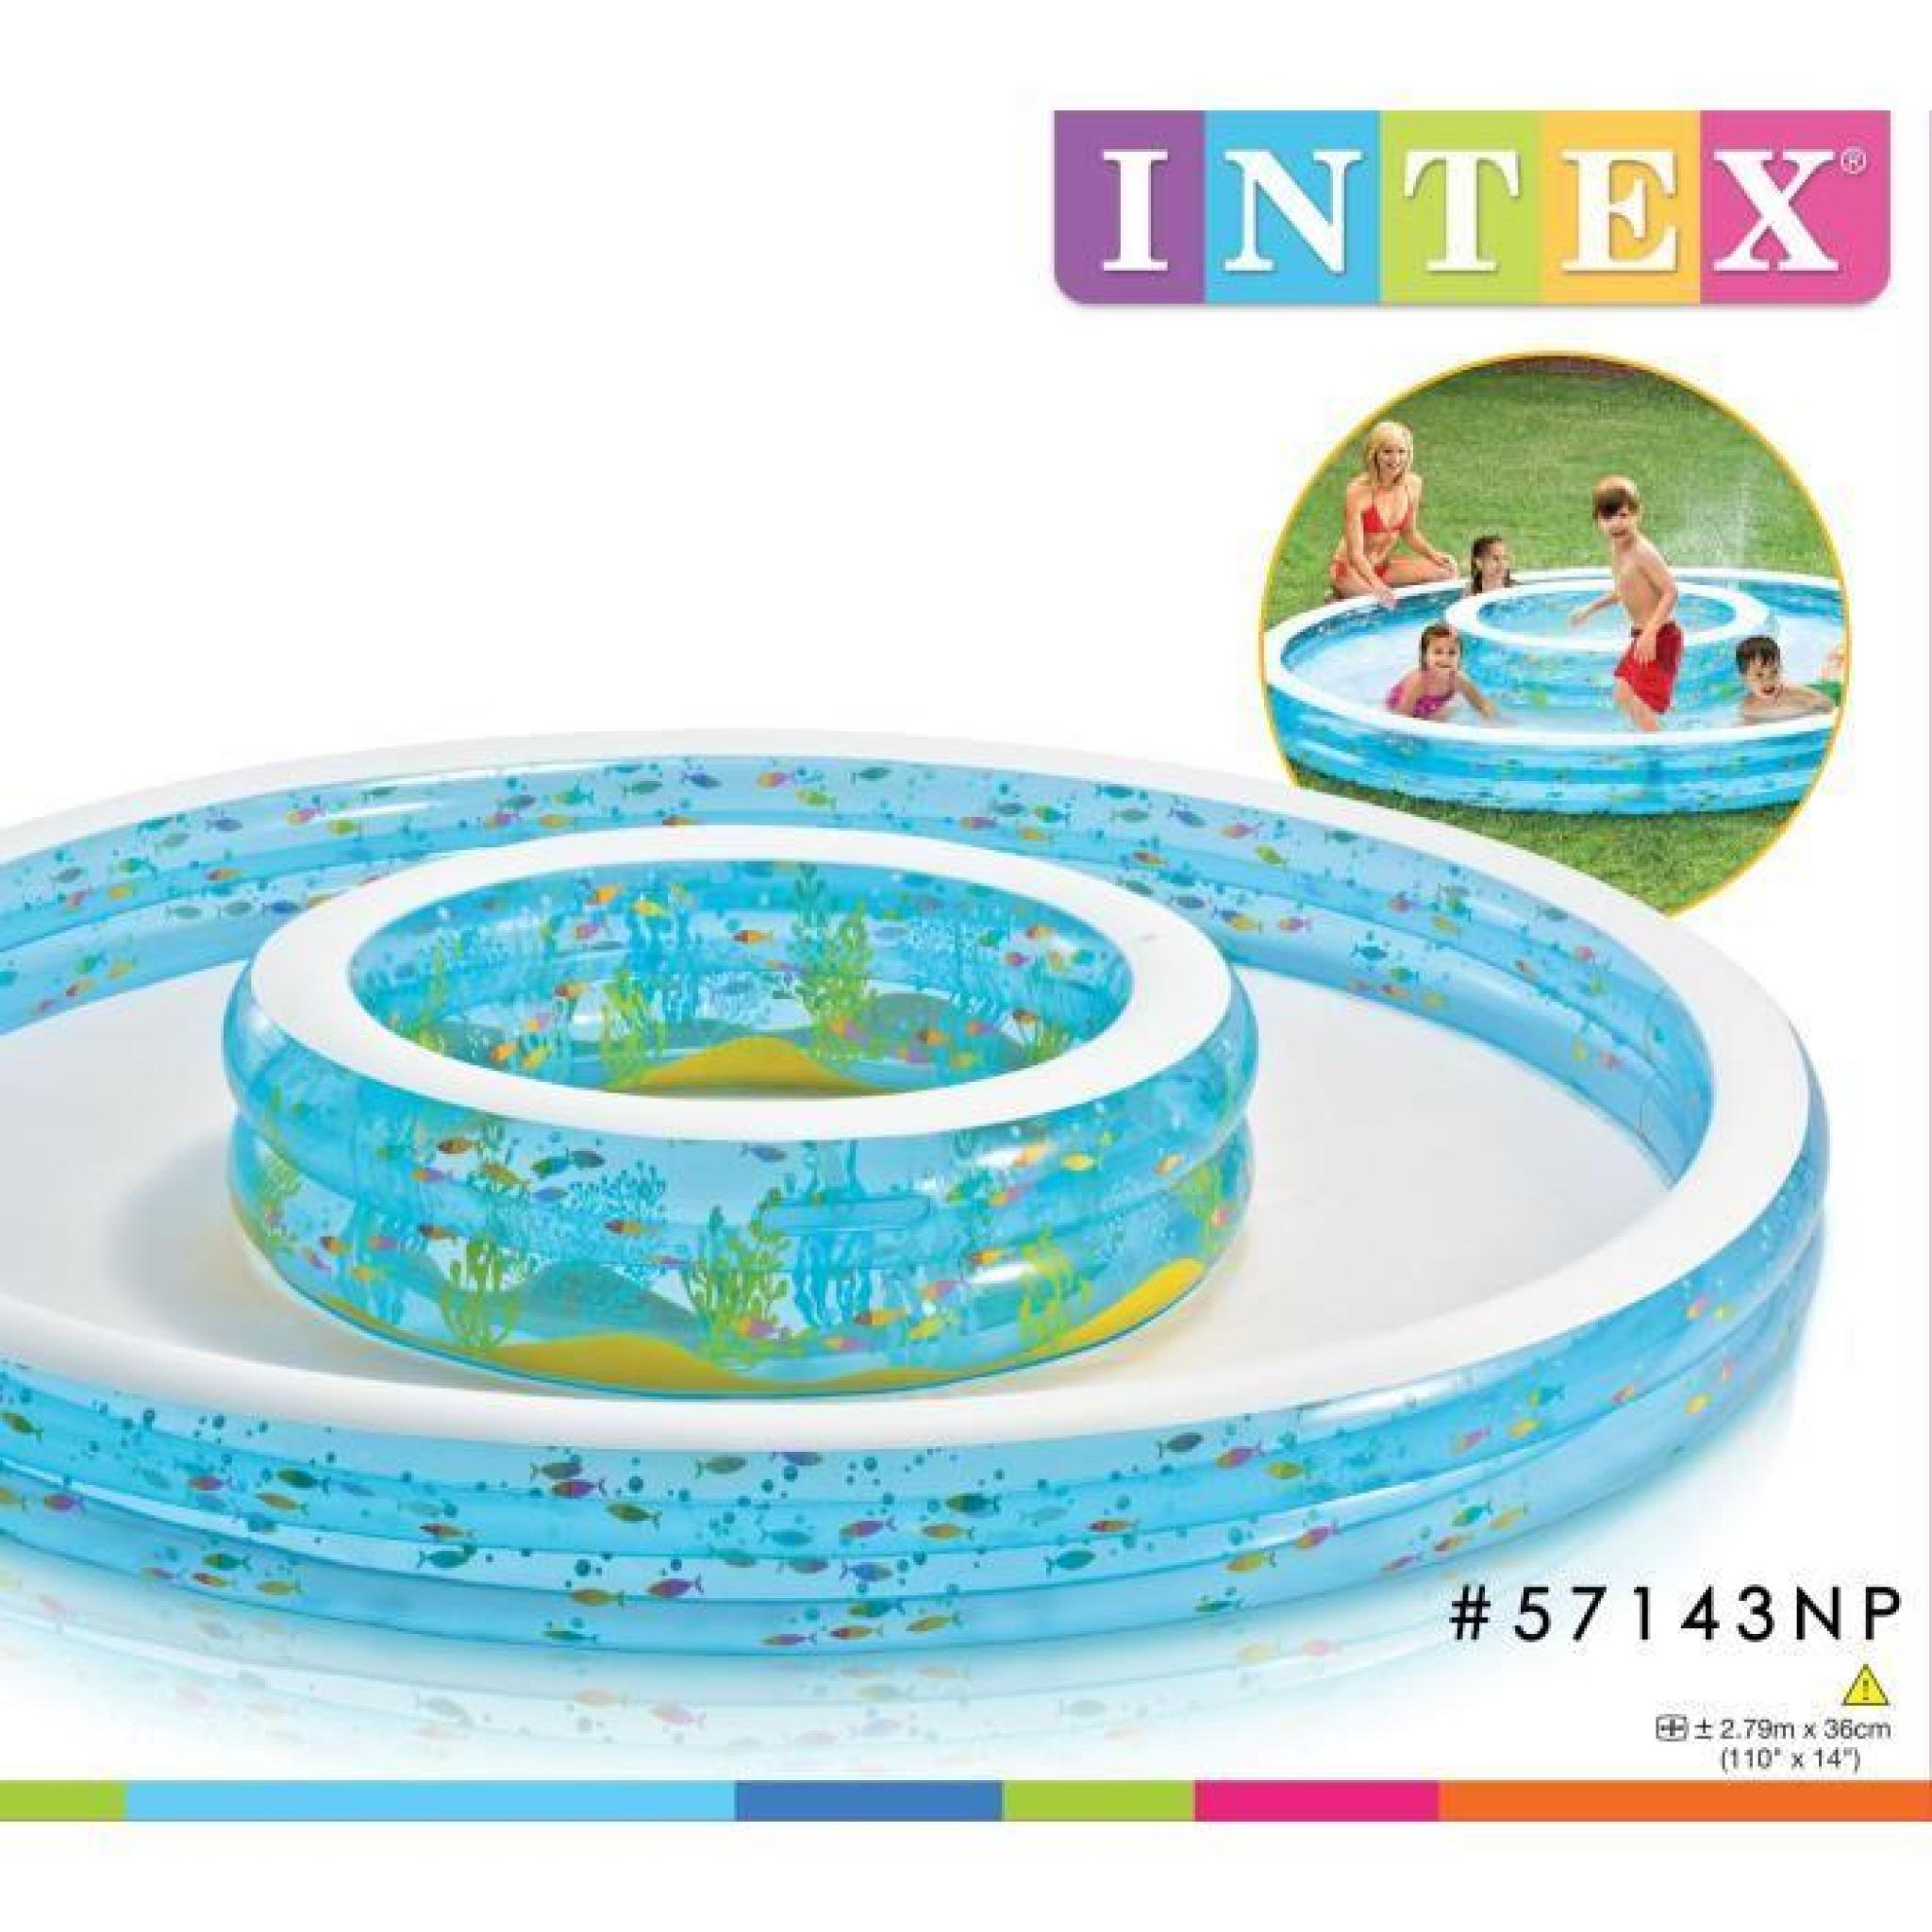 INTEX Piscine 2 tailles Gonflable à débordement Enfant / Famille Double Fontaines 279 x 36 Cm avec Jets d'eau pas cher